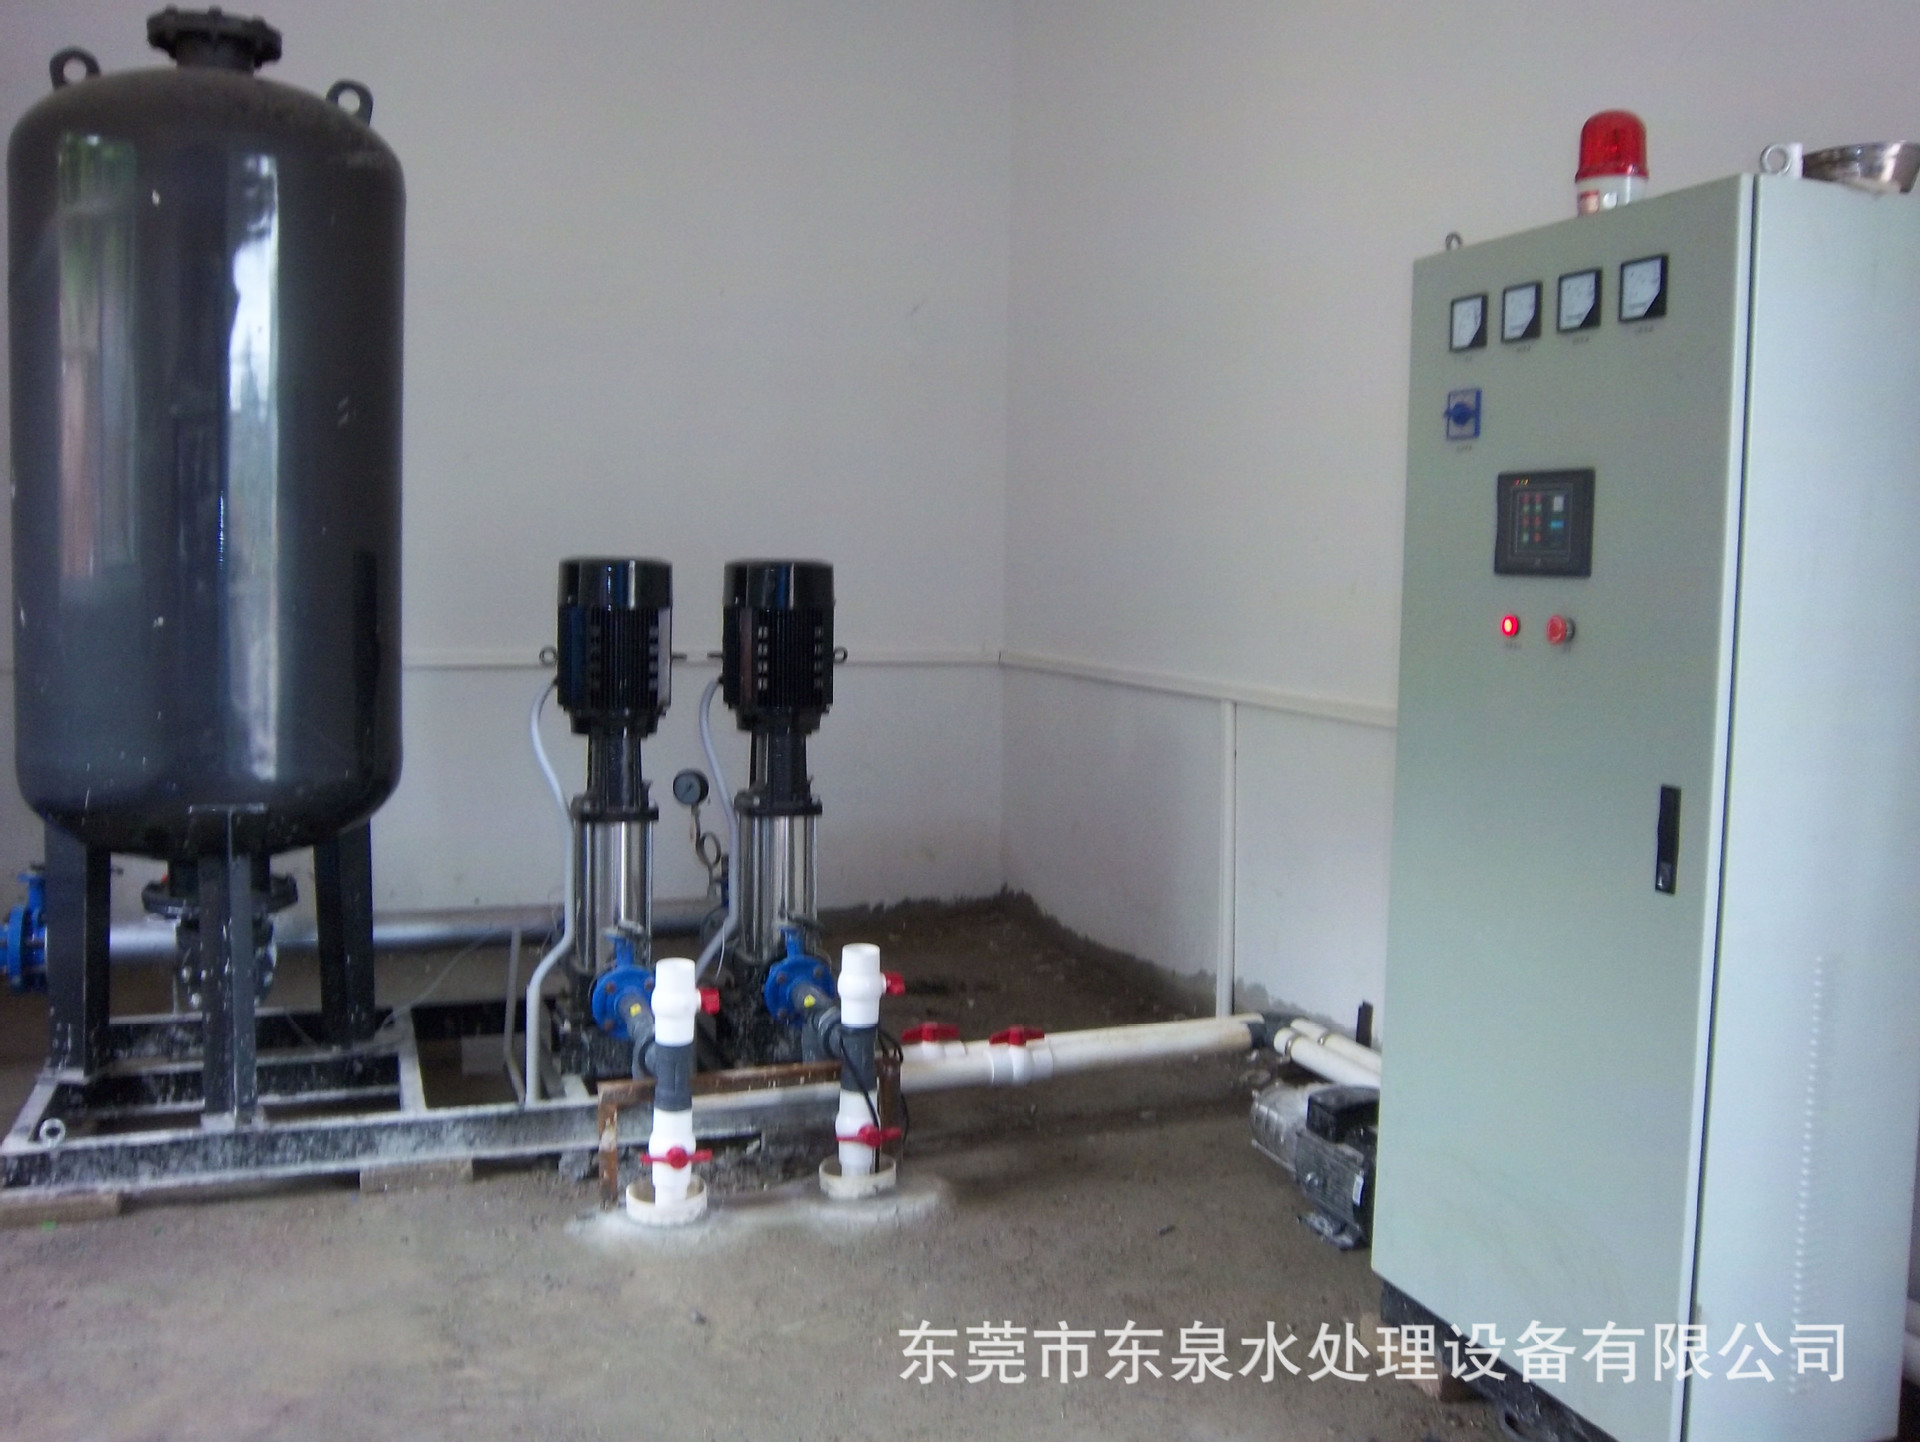 空调系统中作为稳压膨胀补水设备使用,一般称之为囊式落地式膨胀水箱